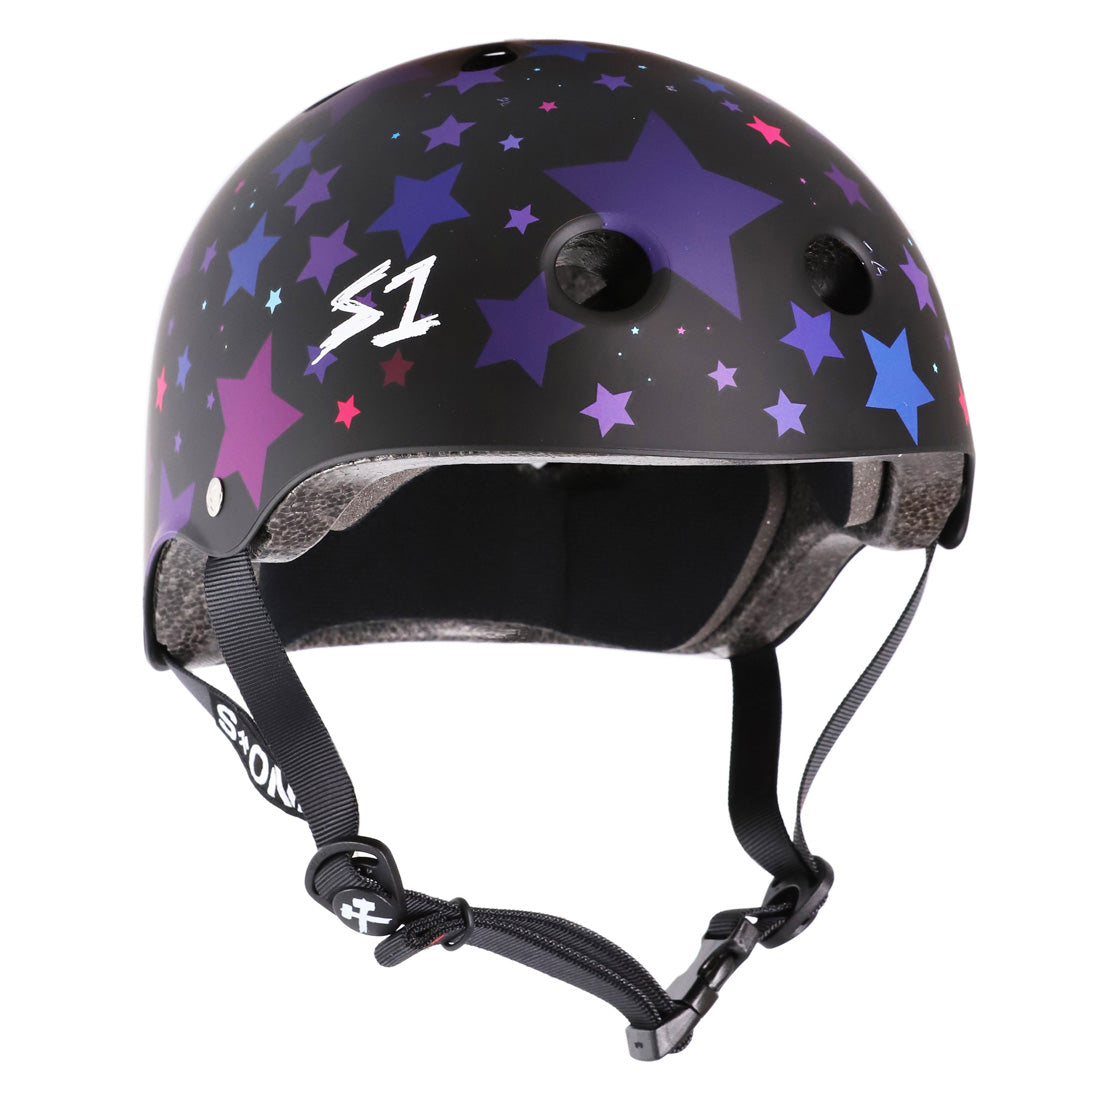 S-One Lifer Helmet - Black Matte/Stars Helmets